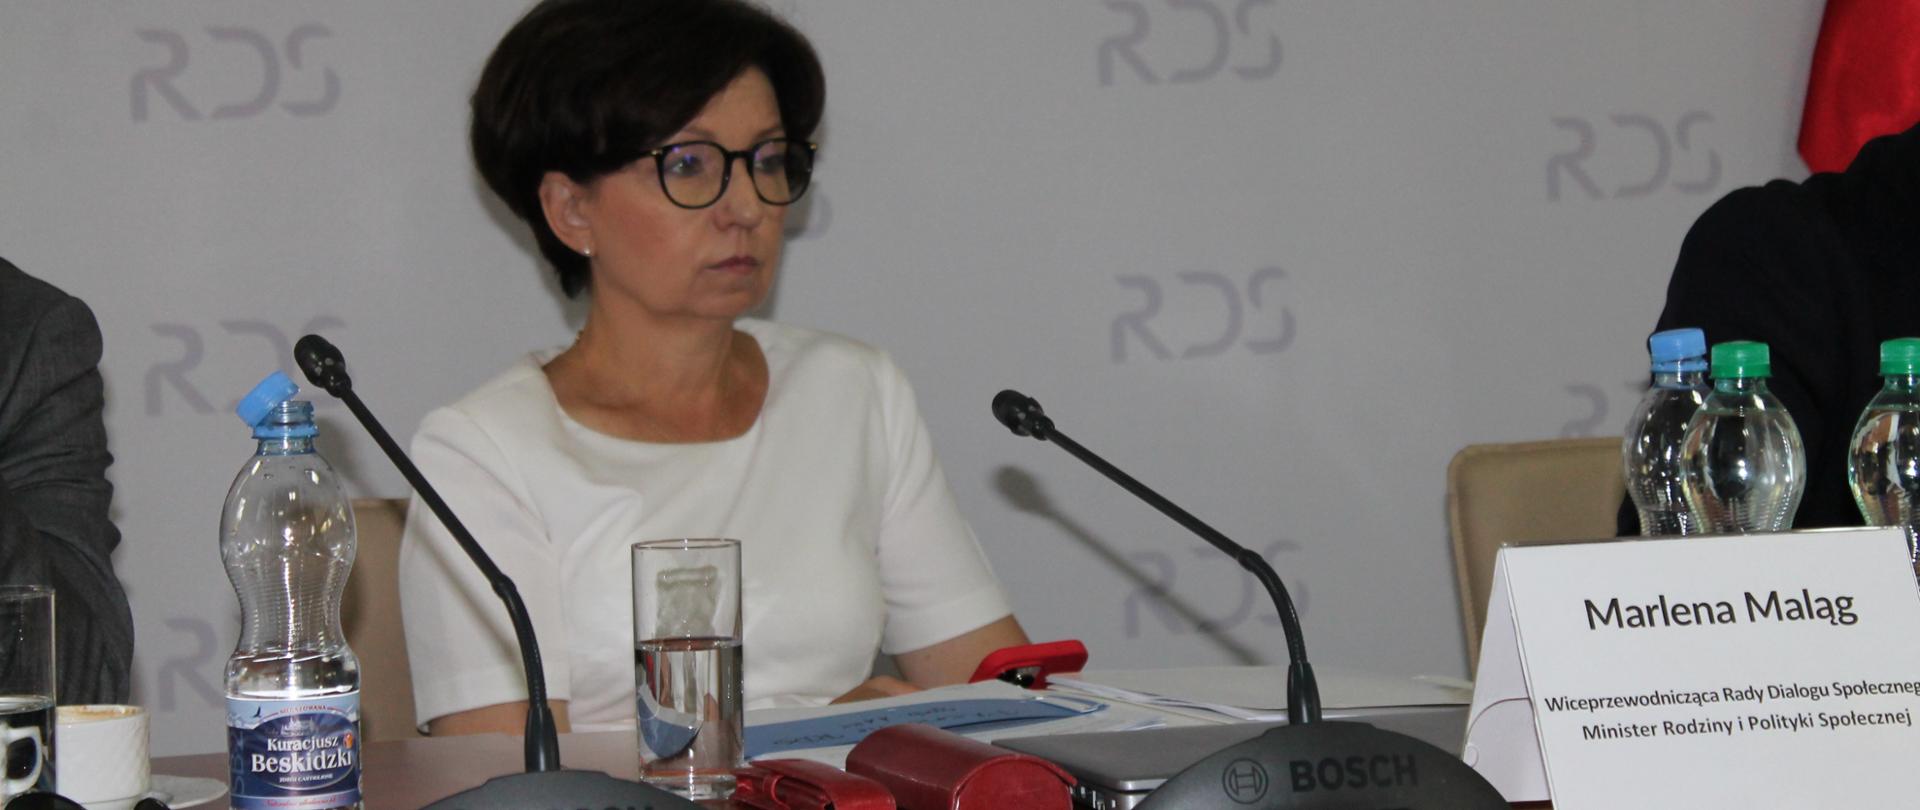 Na zdjęciu za stołem prezydialnym siedzi Marlena Maląg - Minister Rodziny i Polityki Społecznej. W tle baner z napisem Rada Dialogu Społecznego